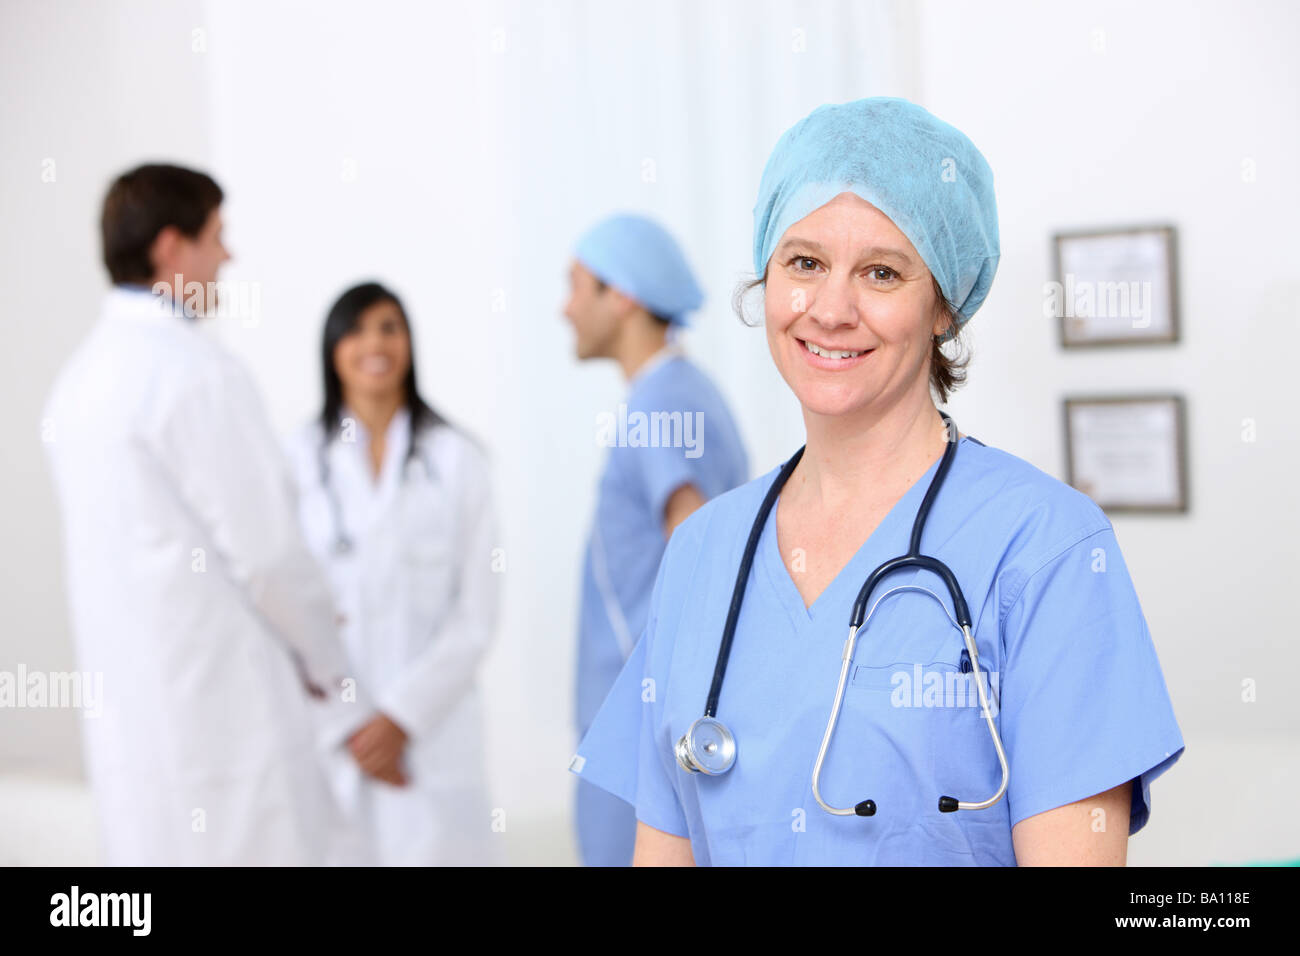 Retrato de enfermera con otro personal médico en segundo plano. Foto de stock